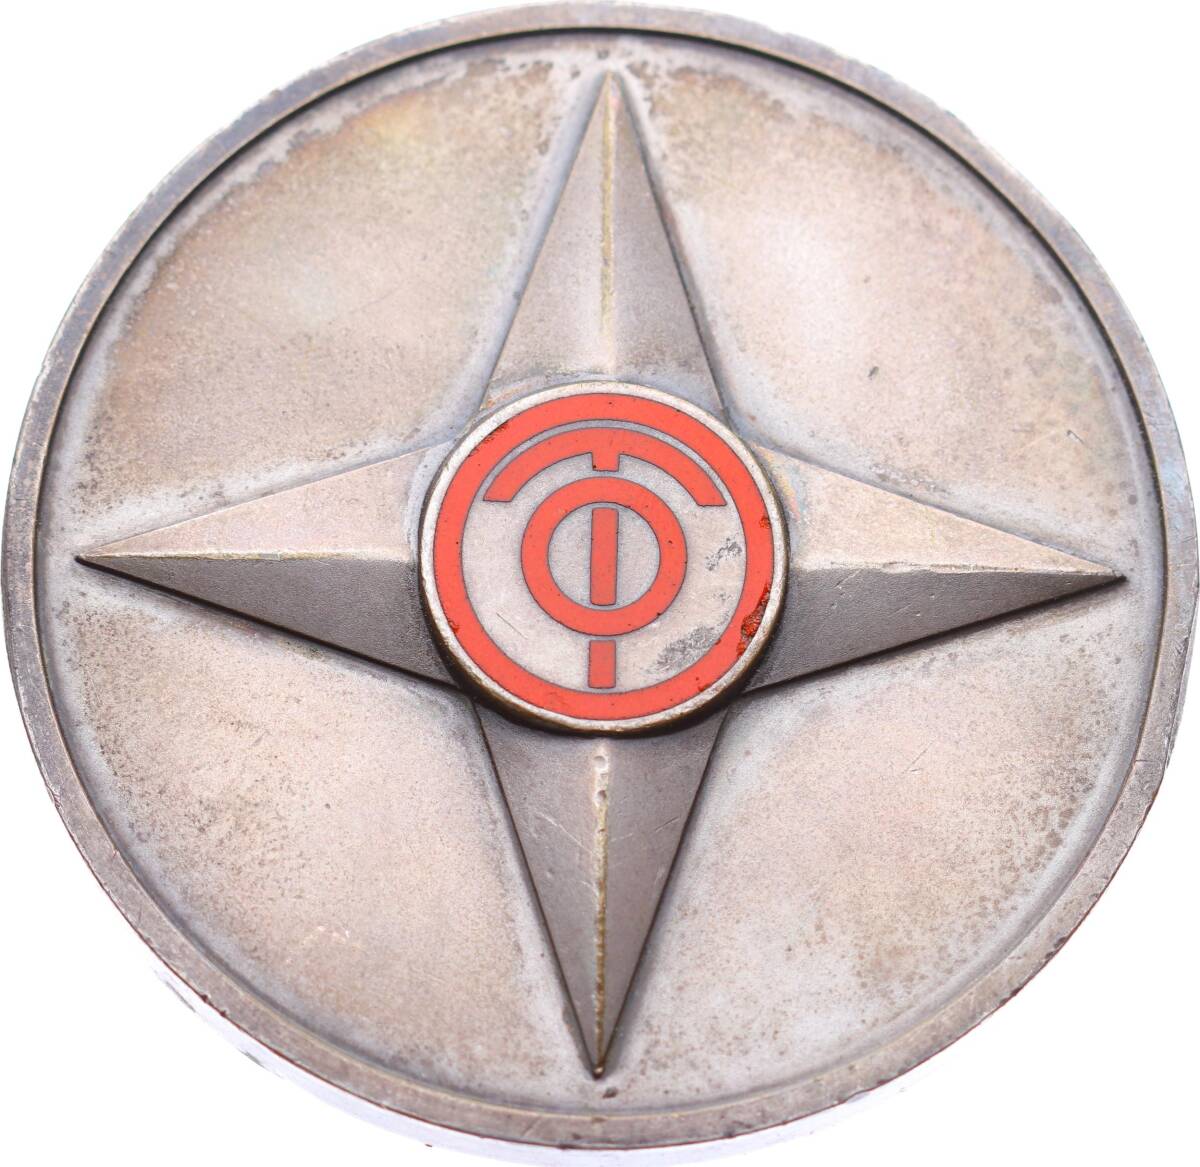 Büyük Boy NATO Gümüş Kaplama Savaş Madalyası MVM1192 - 1